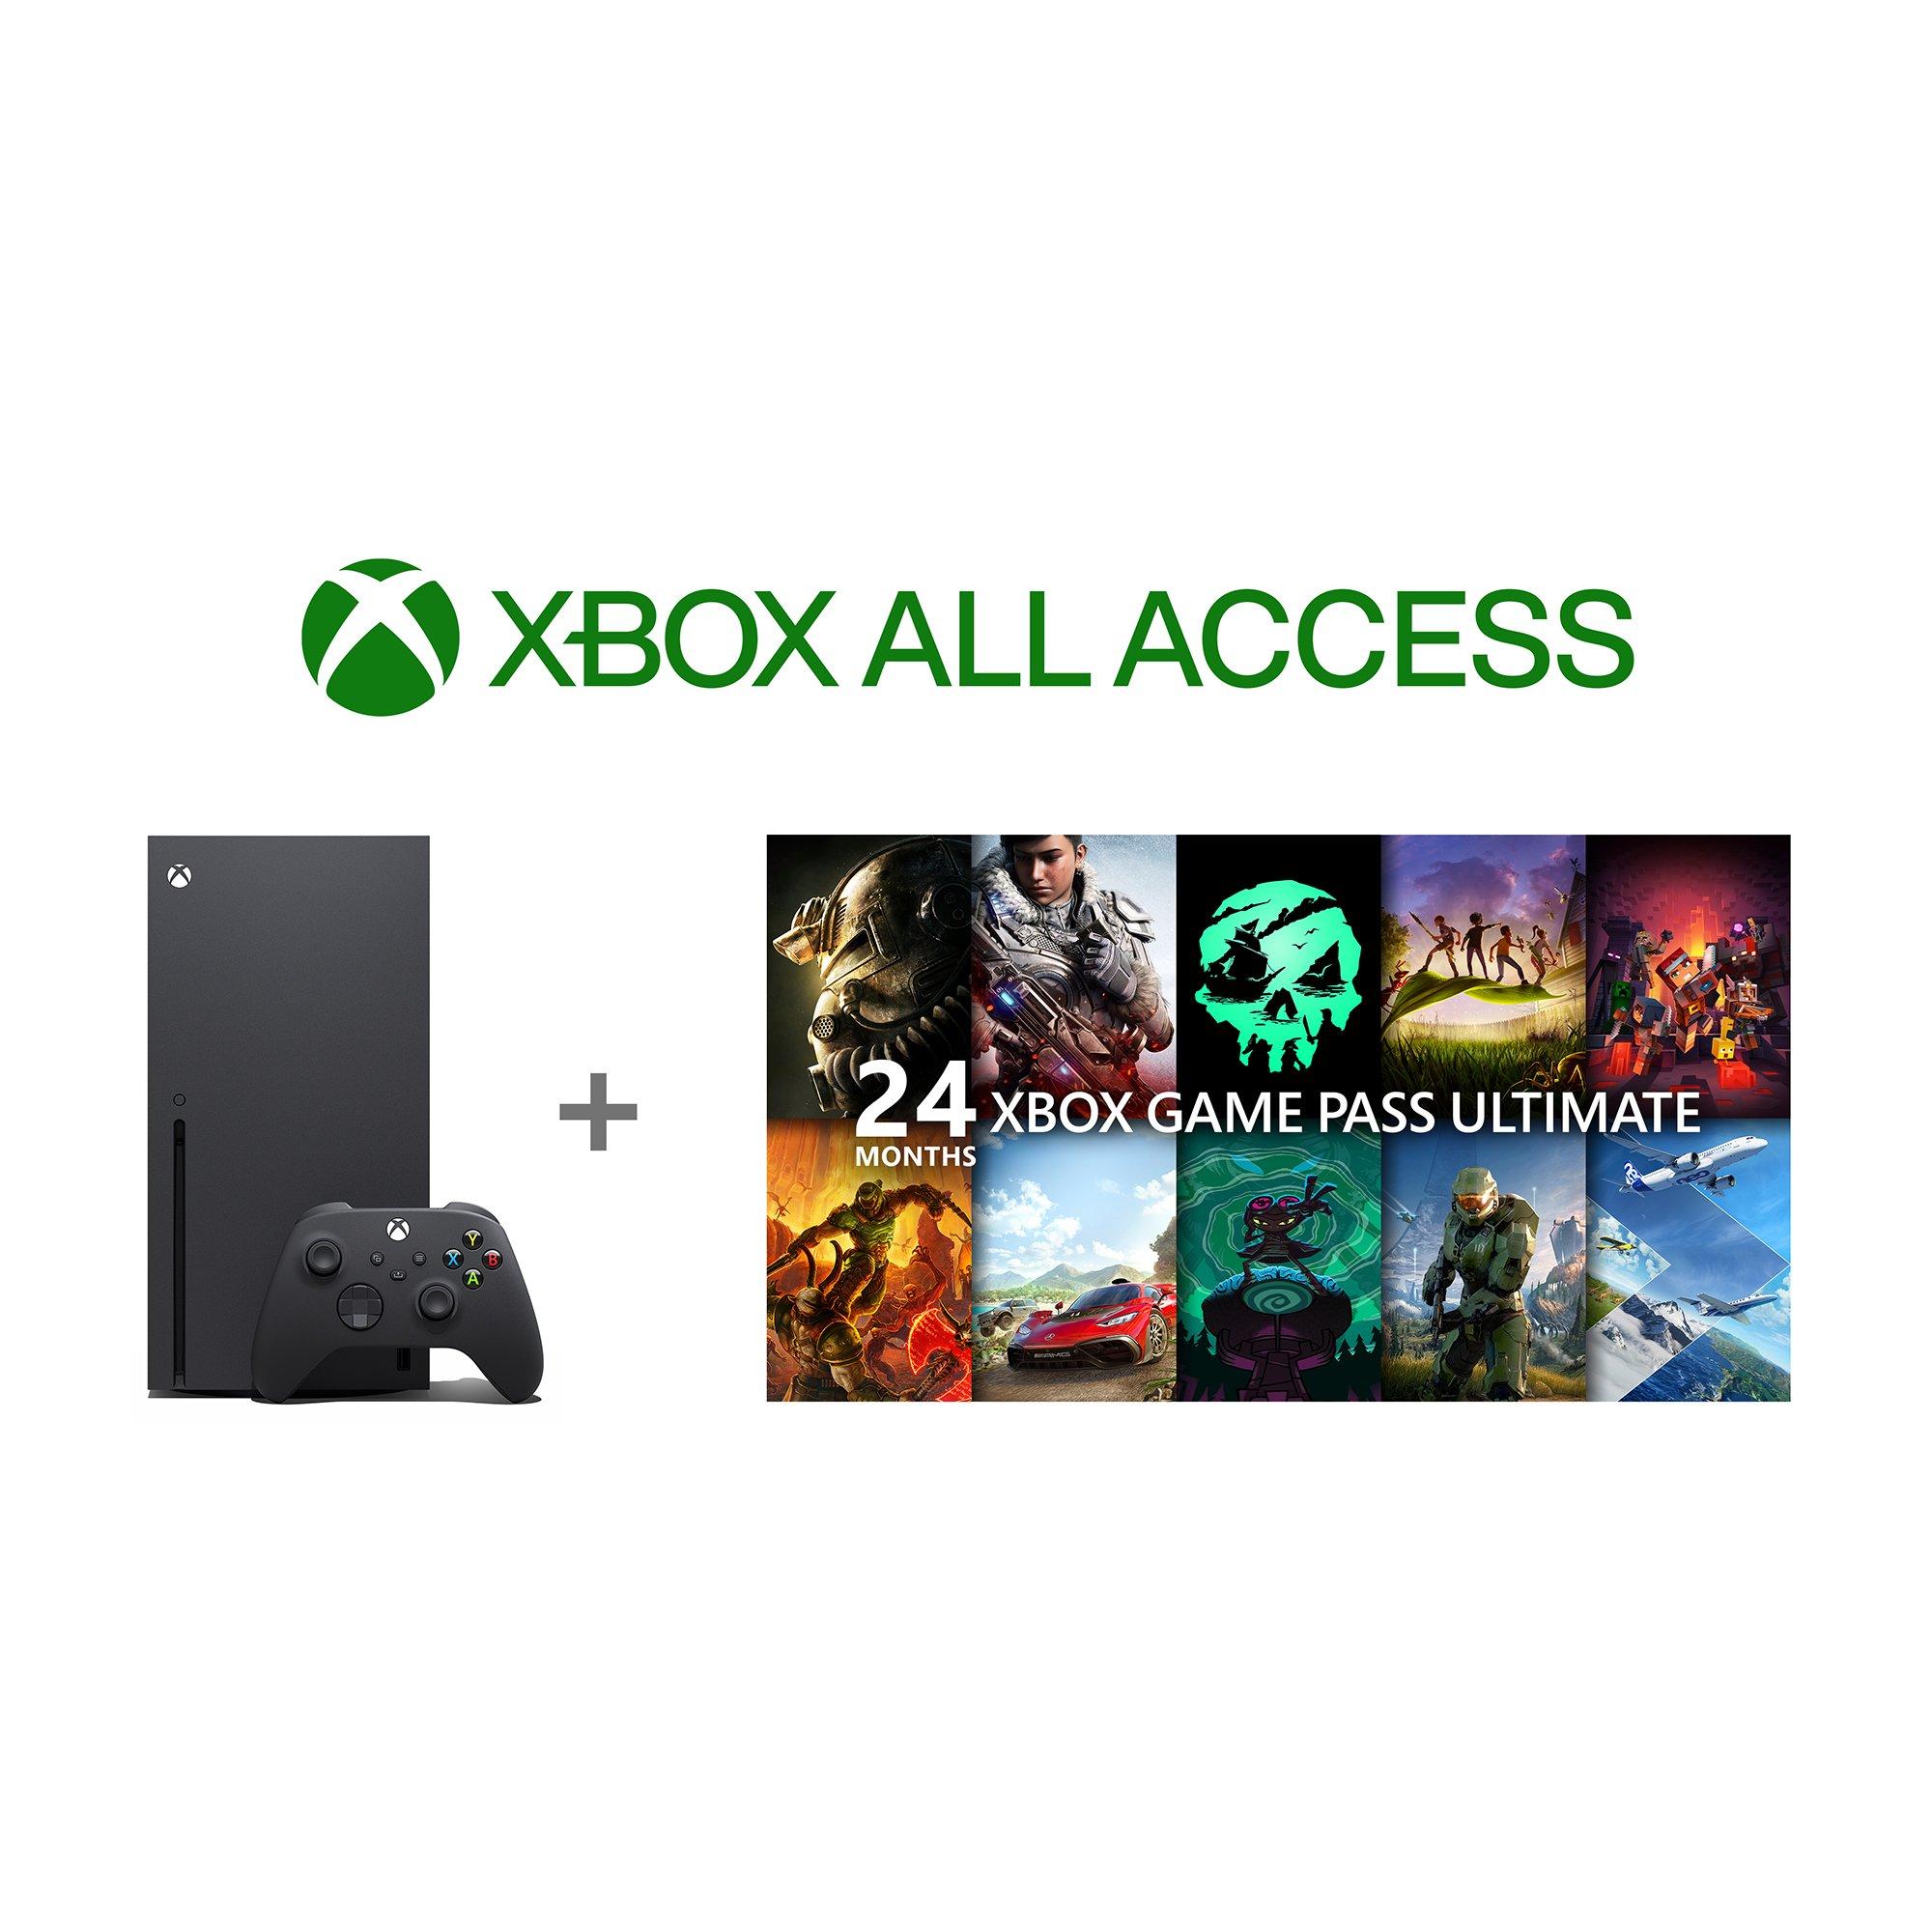 Soeverein Brullen Voor een dagje uit Microsoft - Xbox Series X Xbox All Access | GameStop